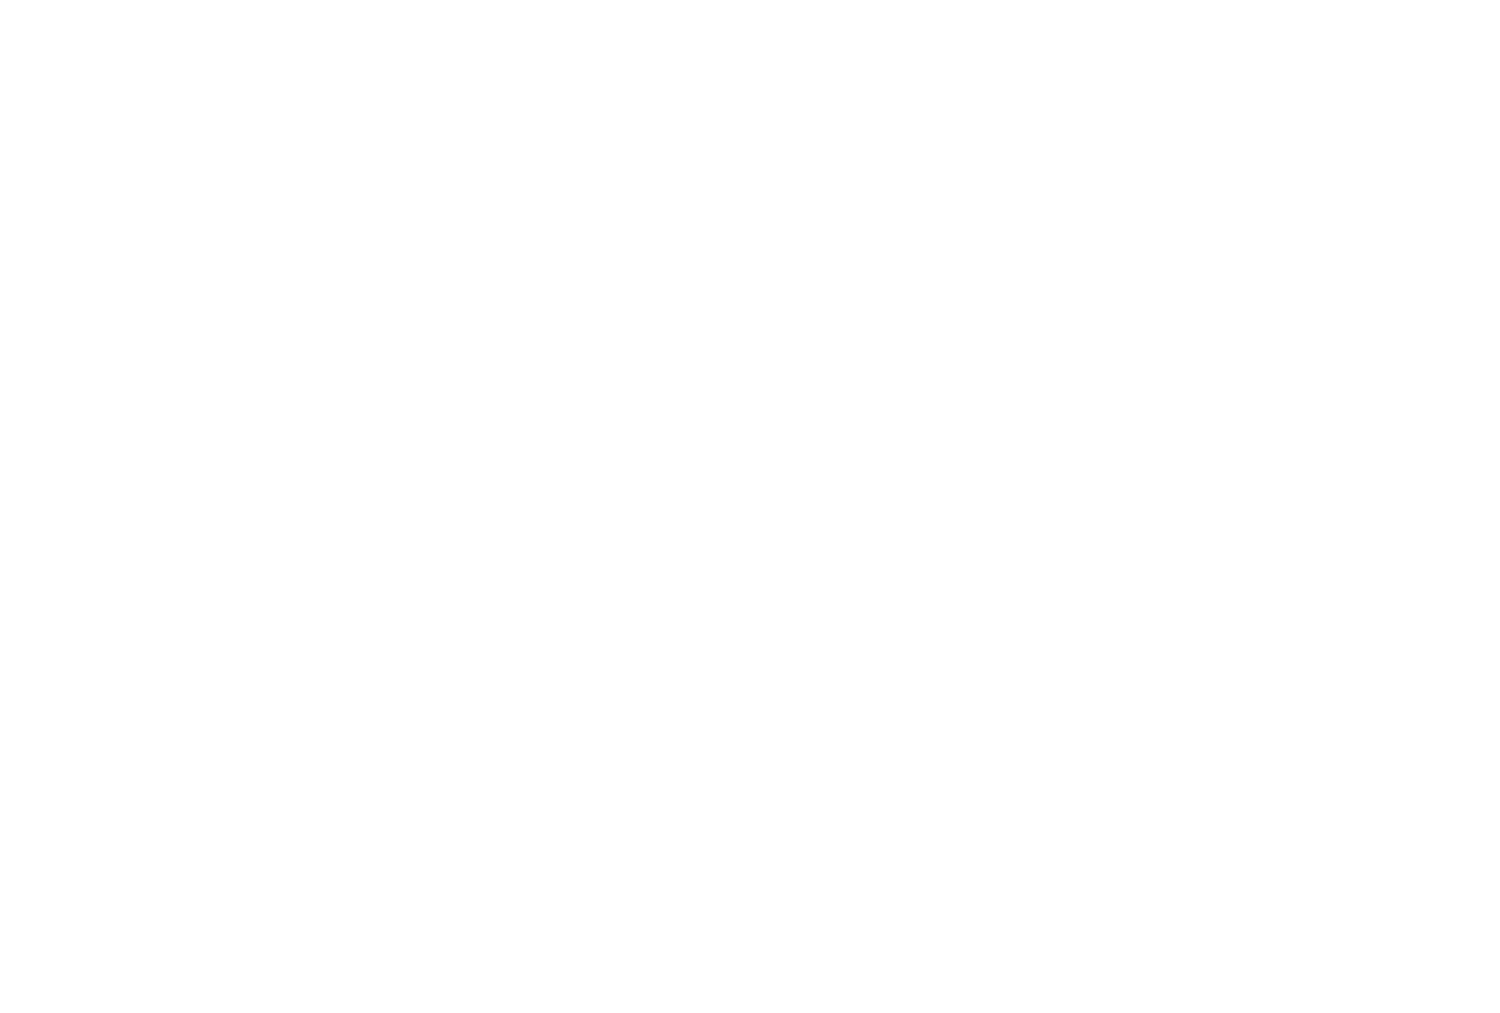 Lorelee Lane Farm                     